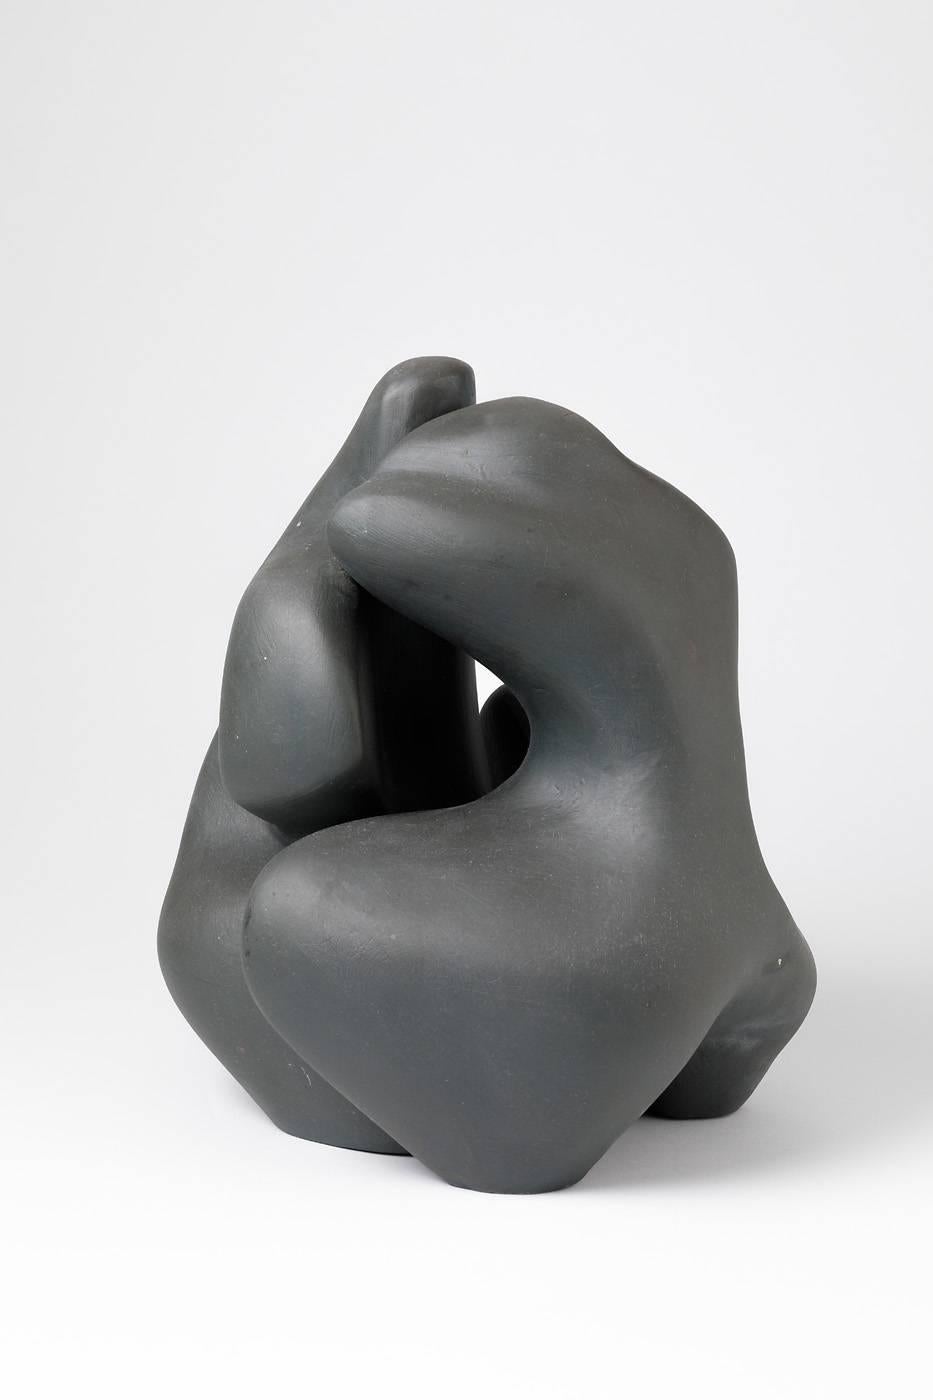 Couple de sculptures en céramique de Tim Orr.

Magnifique glaçure céramique noire.

circa 1970, signé sous la base.

Excellentes conditions.